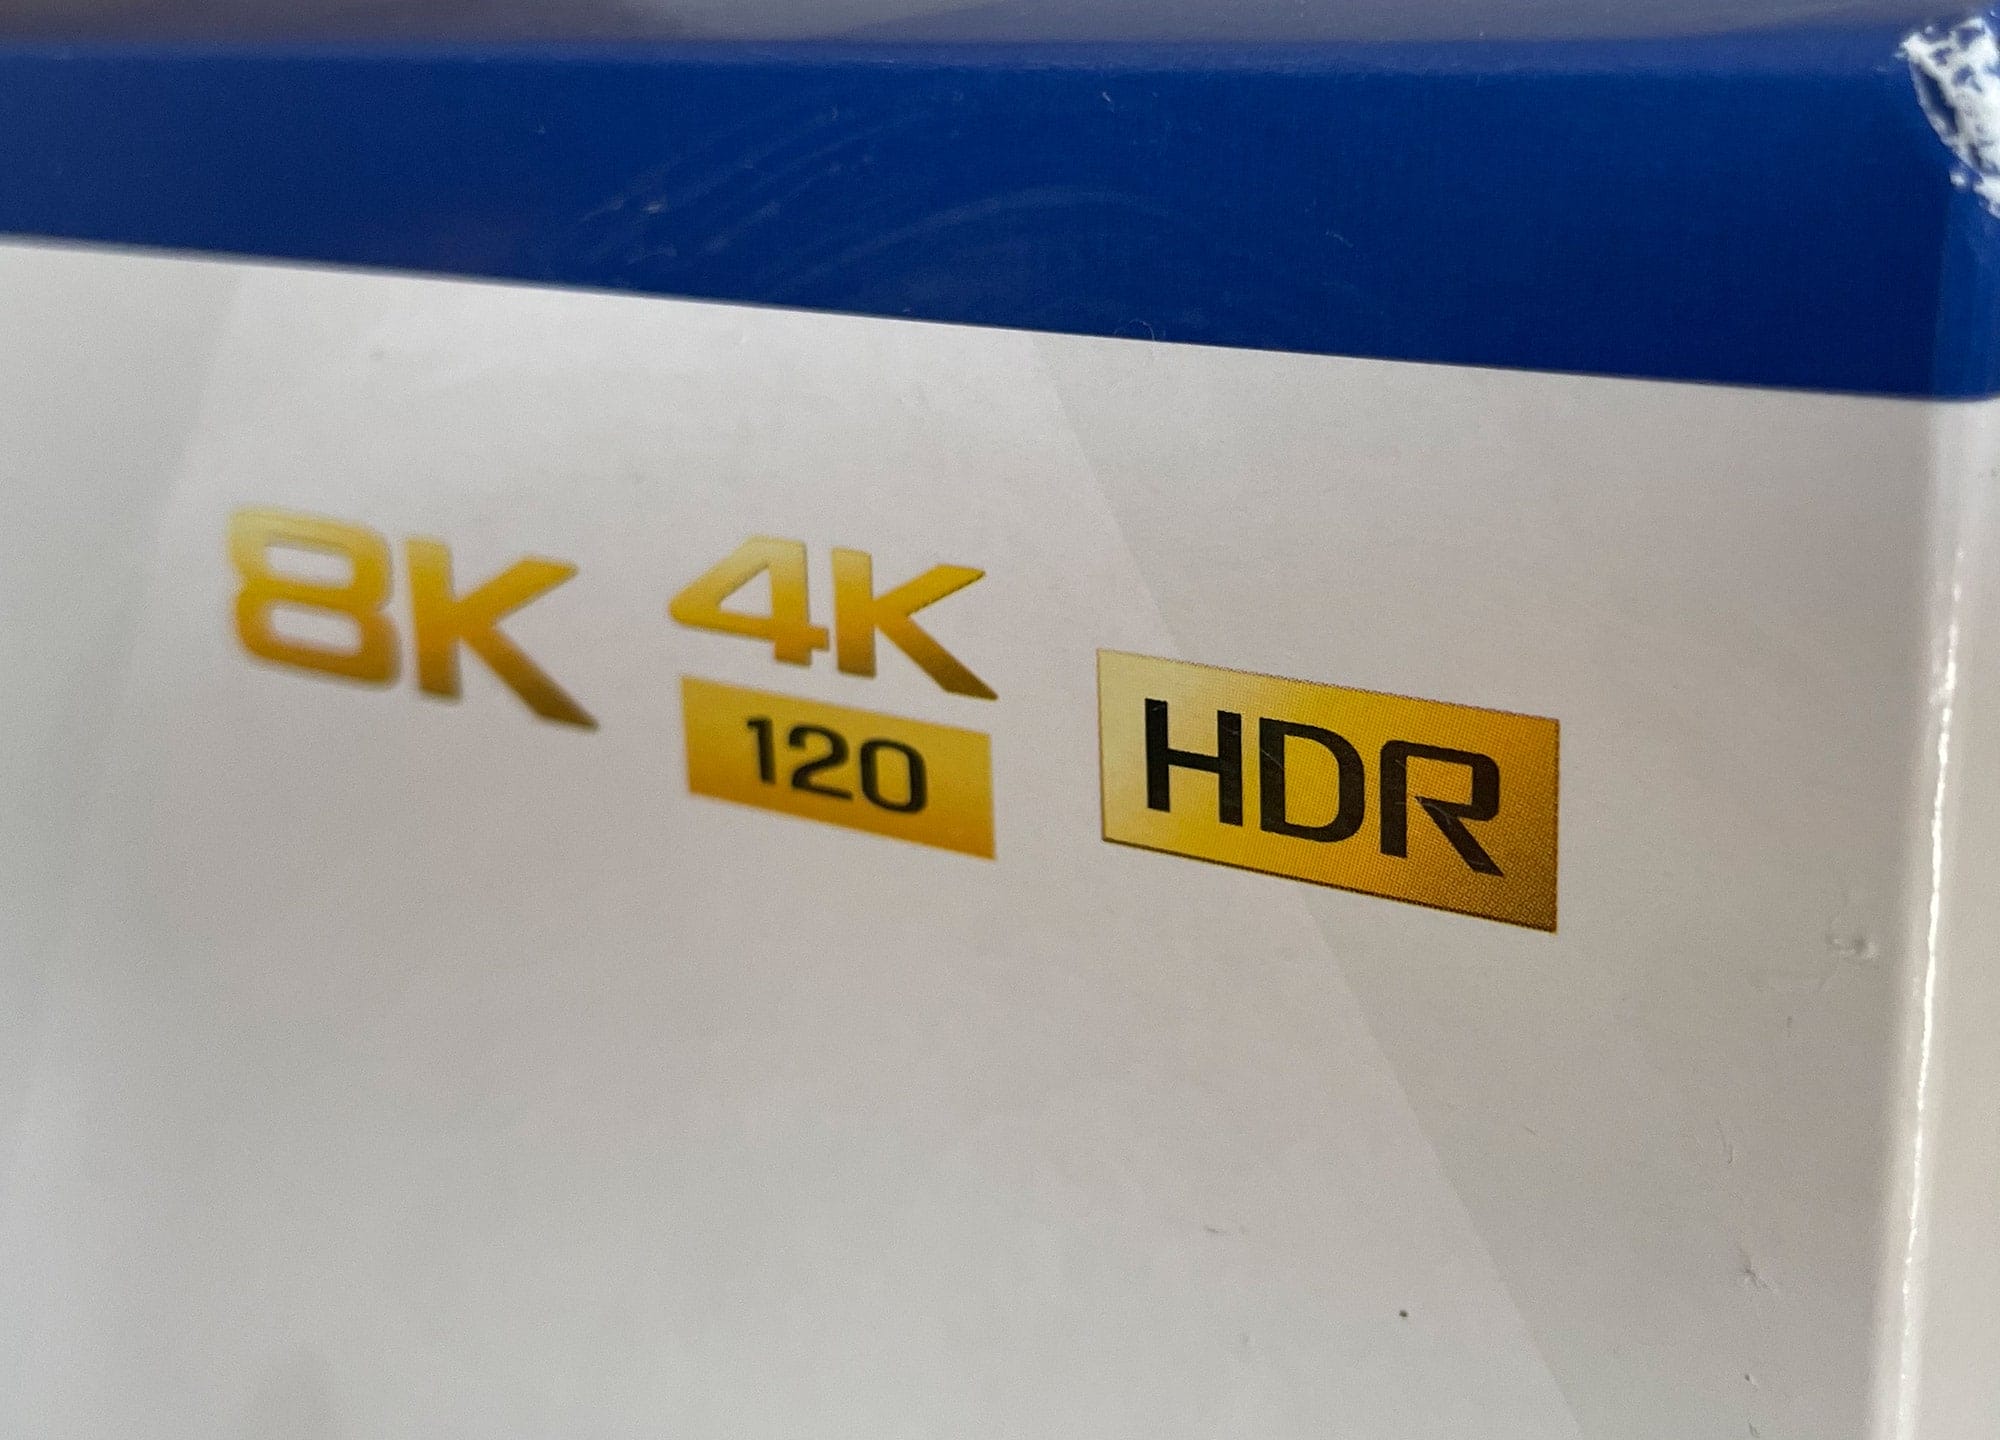 PS5 Pro com resolução 8K chega em 2023/2024 - 4gnews